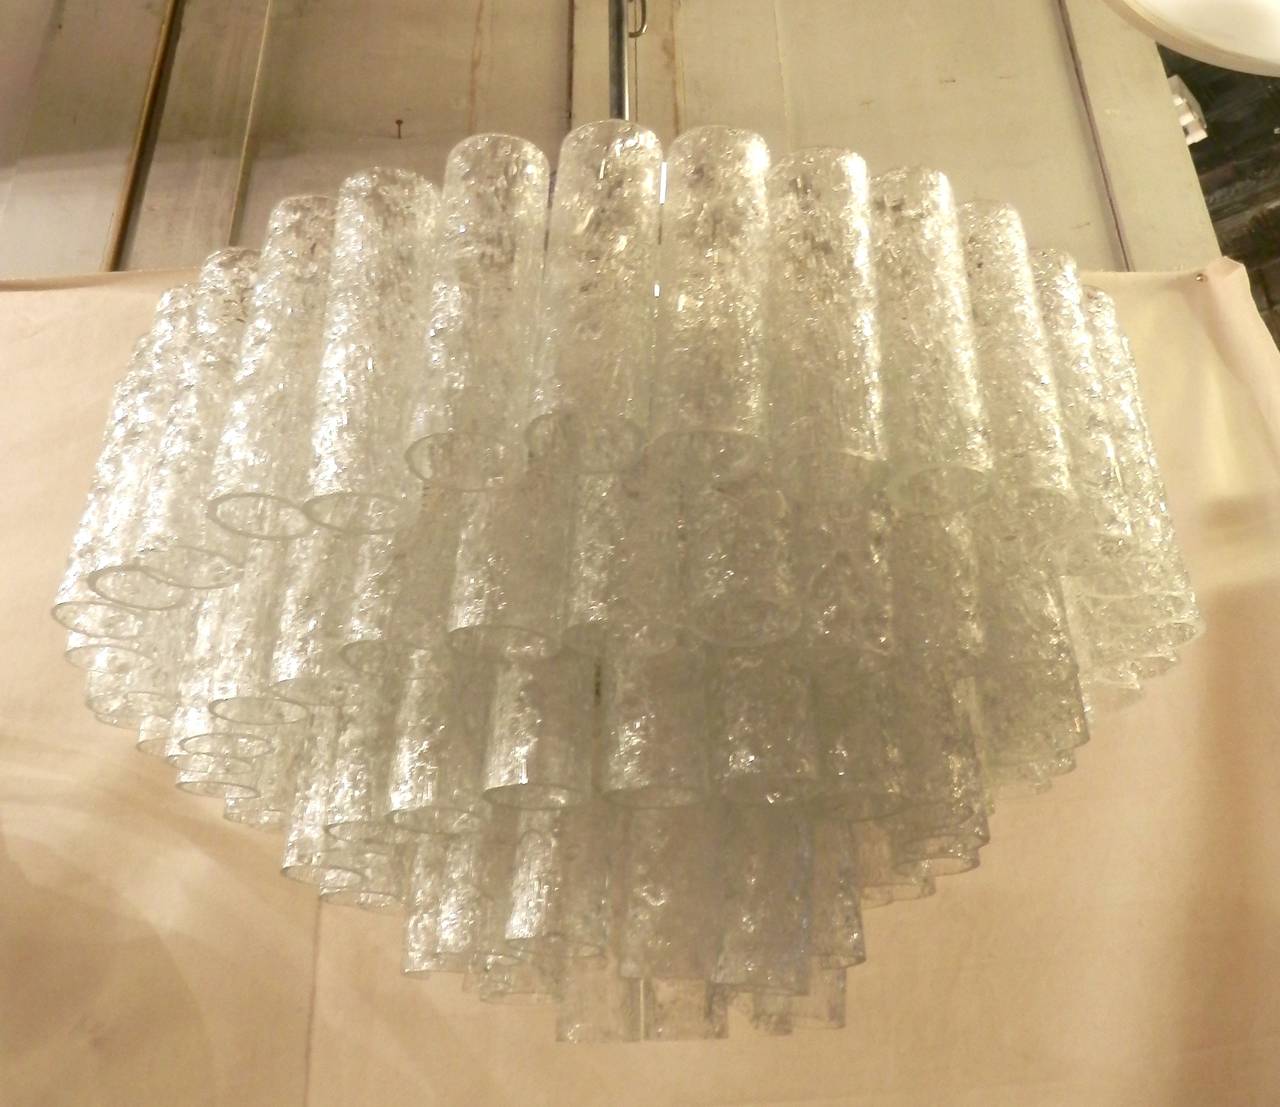 Elégant lustre avec un magnifique ensemble de pendentifs en cascade en verre craquelé. Excellent éclairage avec des douilles pouvant accueillir jusqu'à dix ampoules. Longue tige et cadre chromé avec verre semi-transparent suspendu.

(Veuillez